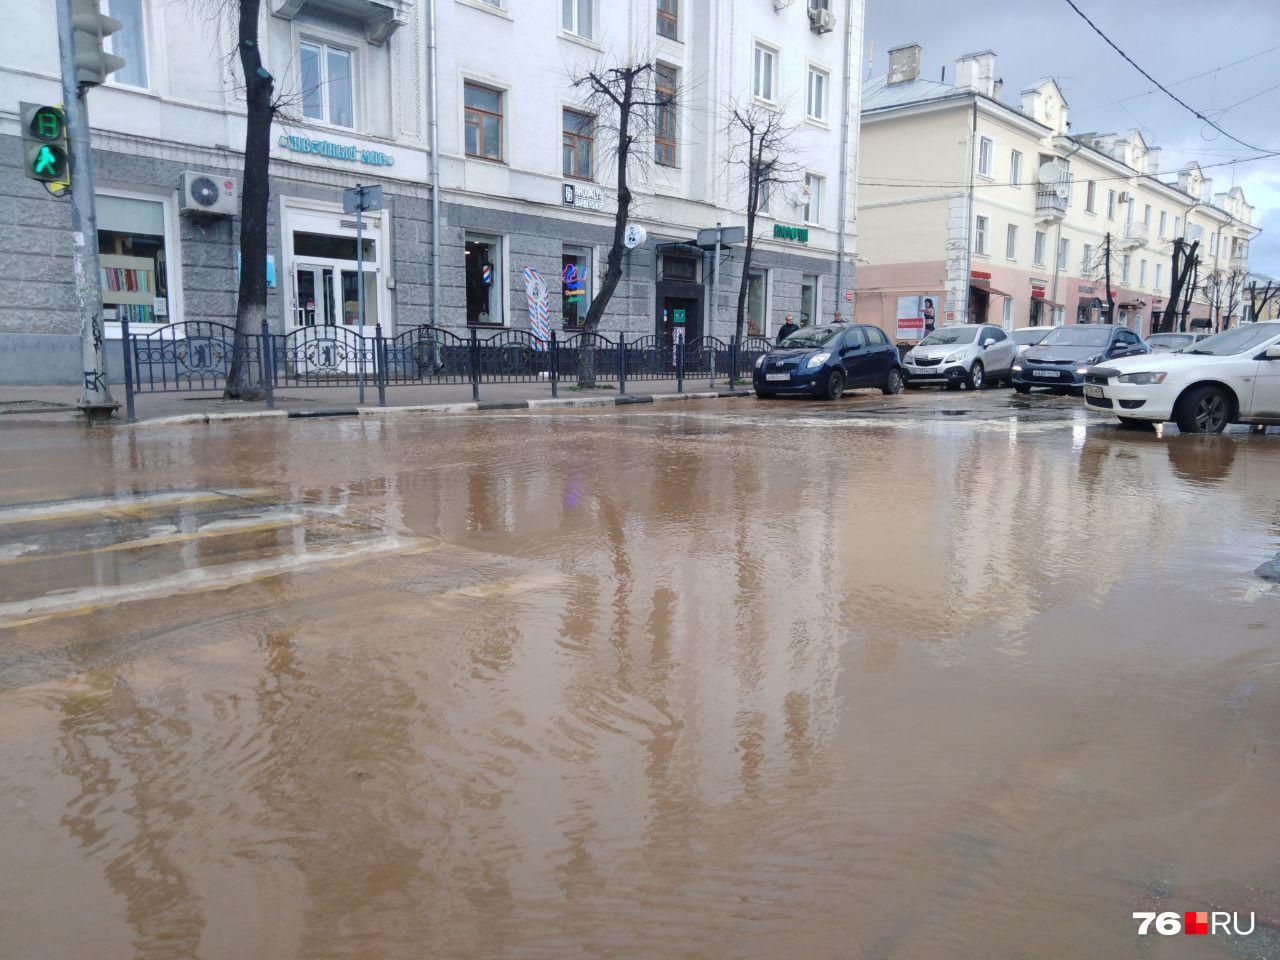 Сотрудники офисов на Депутатской говорят, что на месте потопа вздулся асфальт